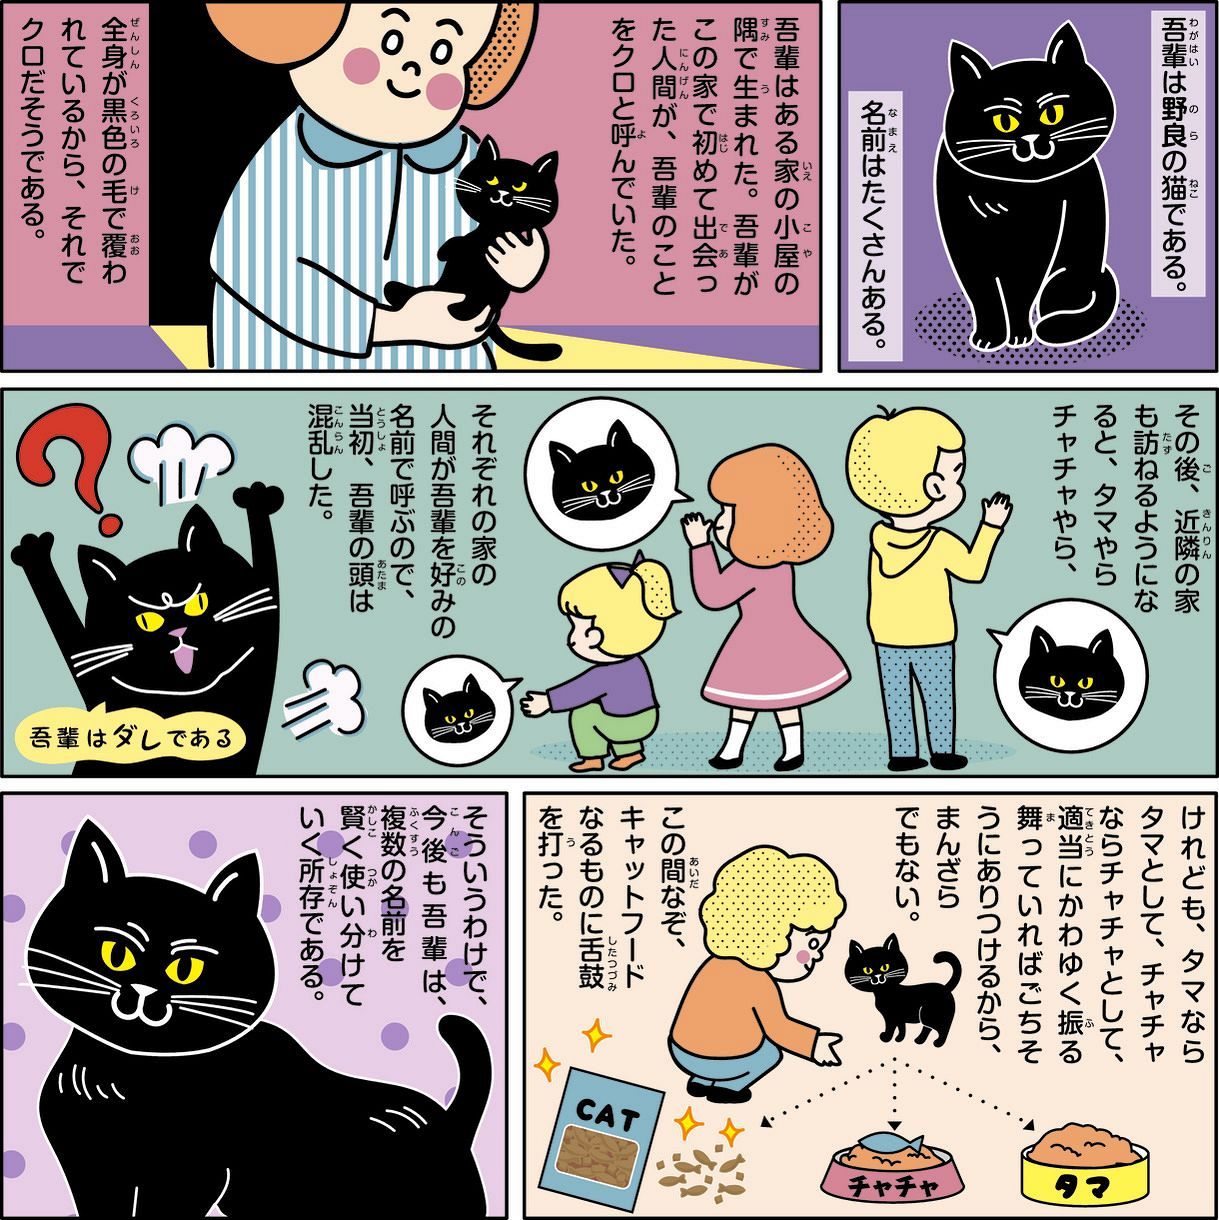 吾輩は野良の猫である 愛知県半田市 石黒峻登 東京新聞 Tokyo Web